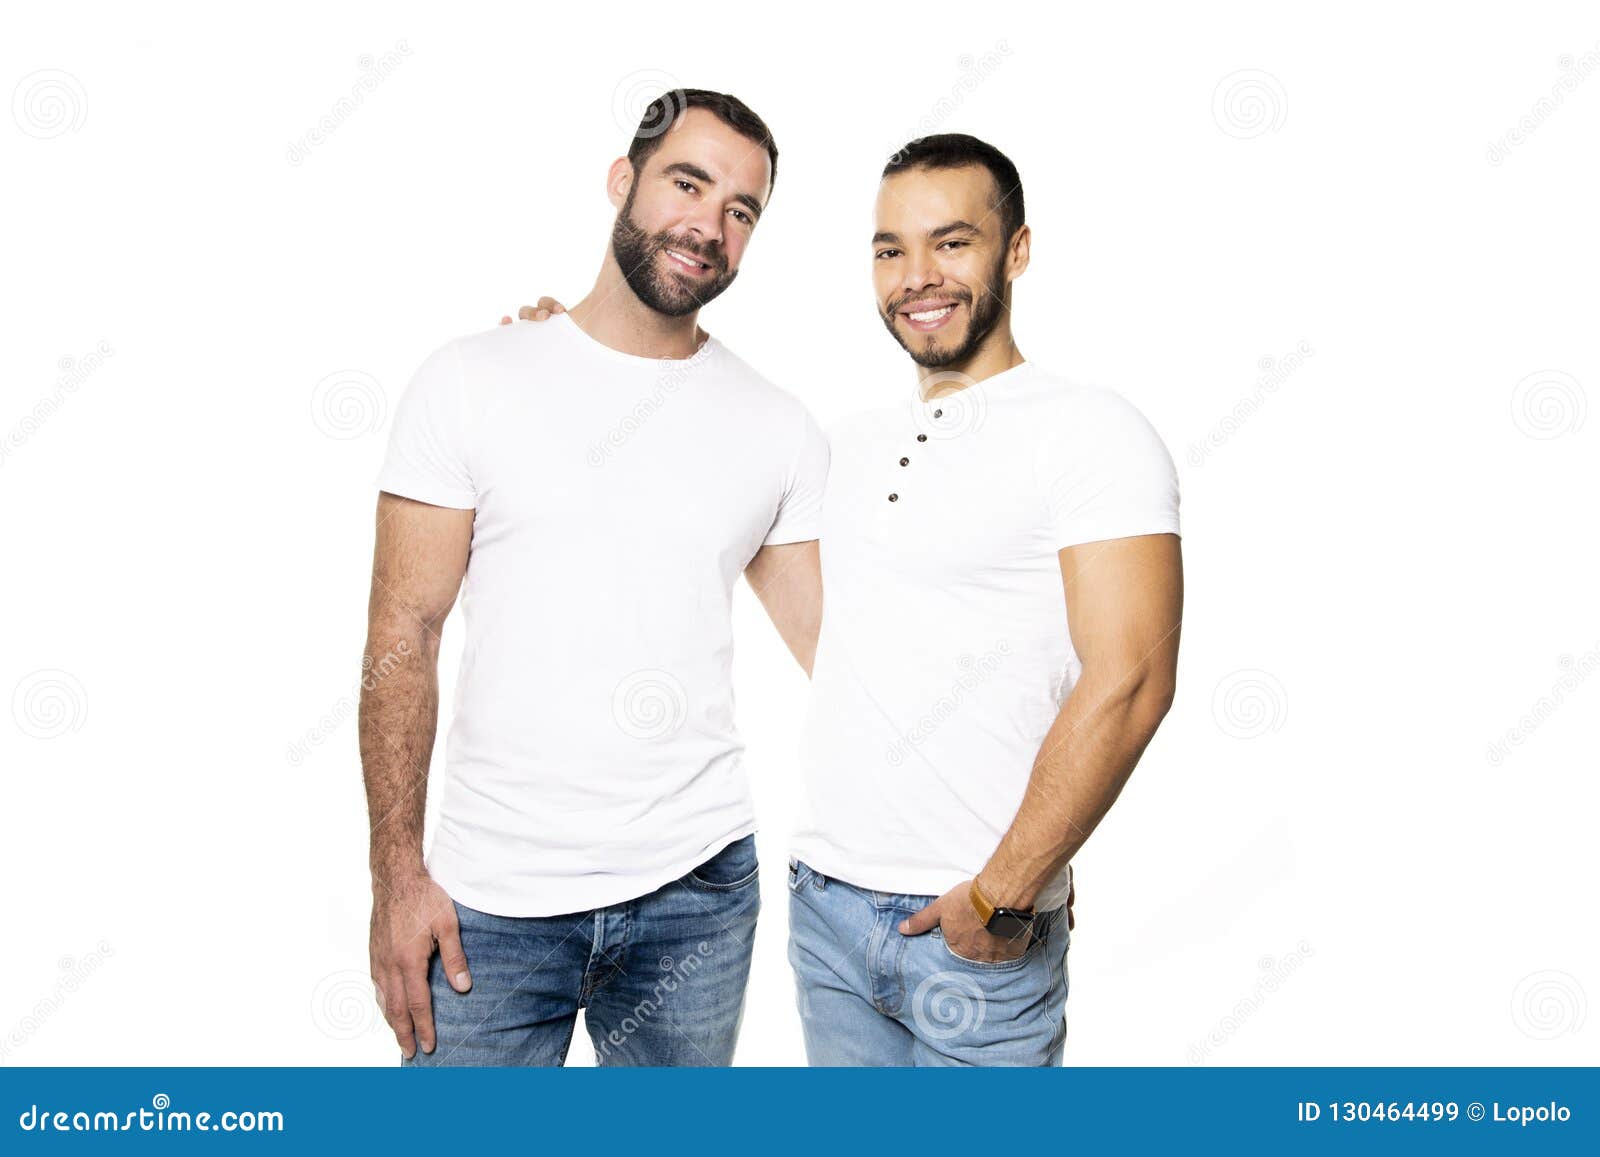 同性恋情侣在镜头前摆姿势 库存图片. 图片 包括有 男性, 合作伙伴, 查找, 人们, 外出, 同性恋者 - 143653629